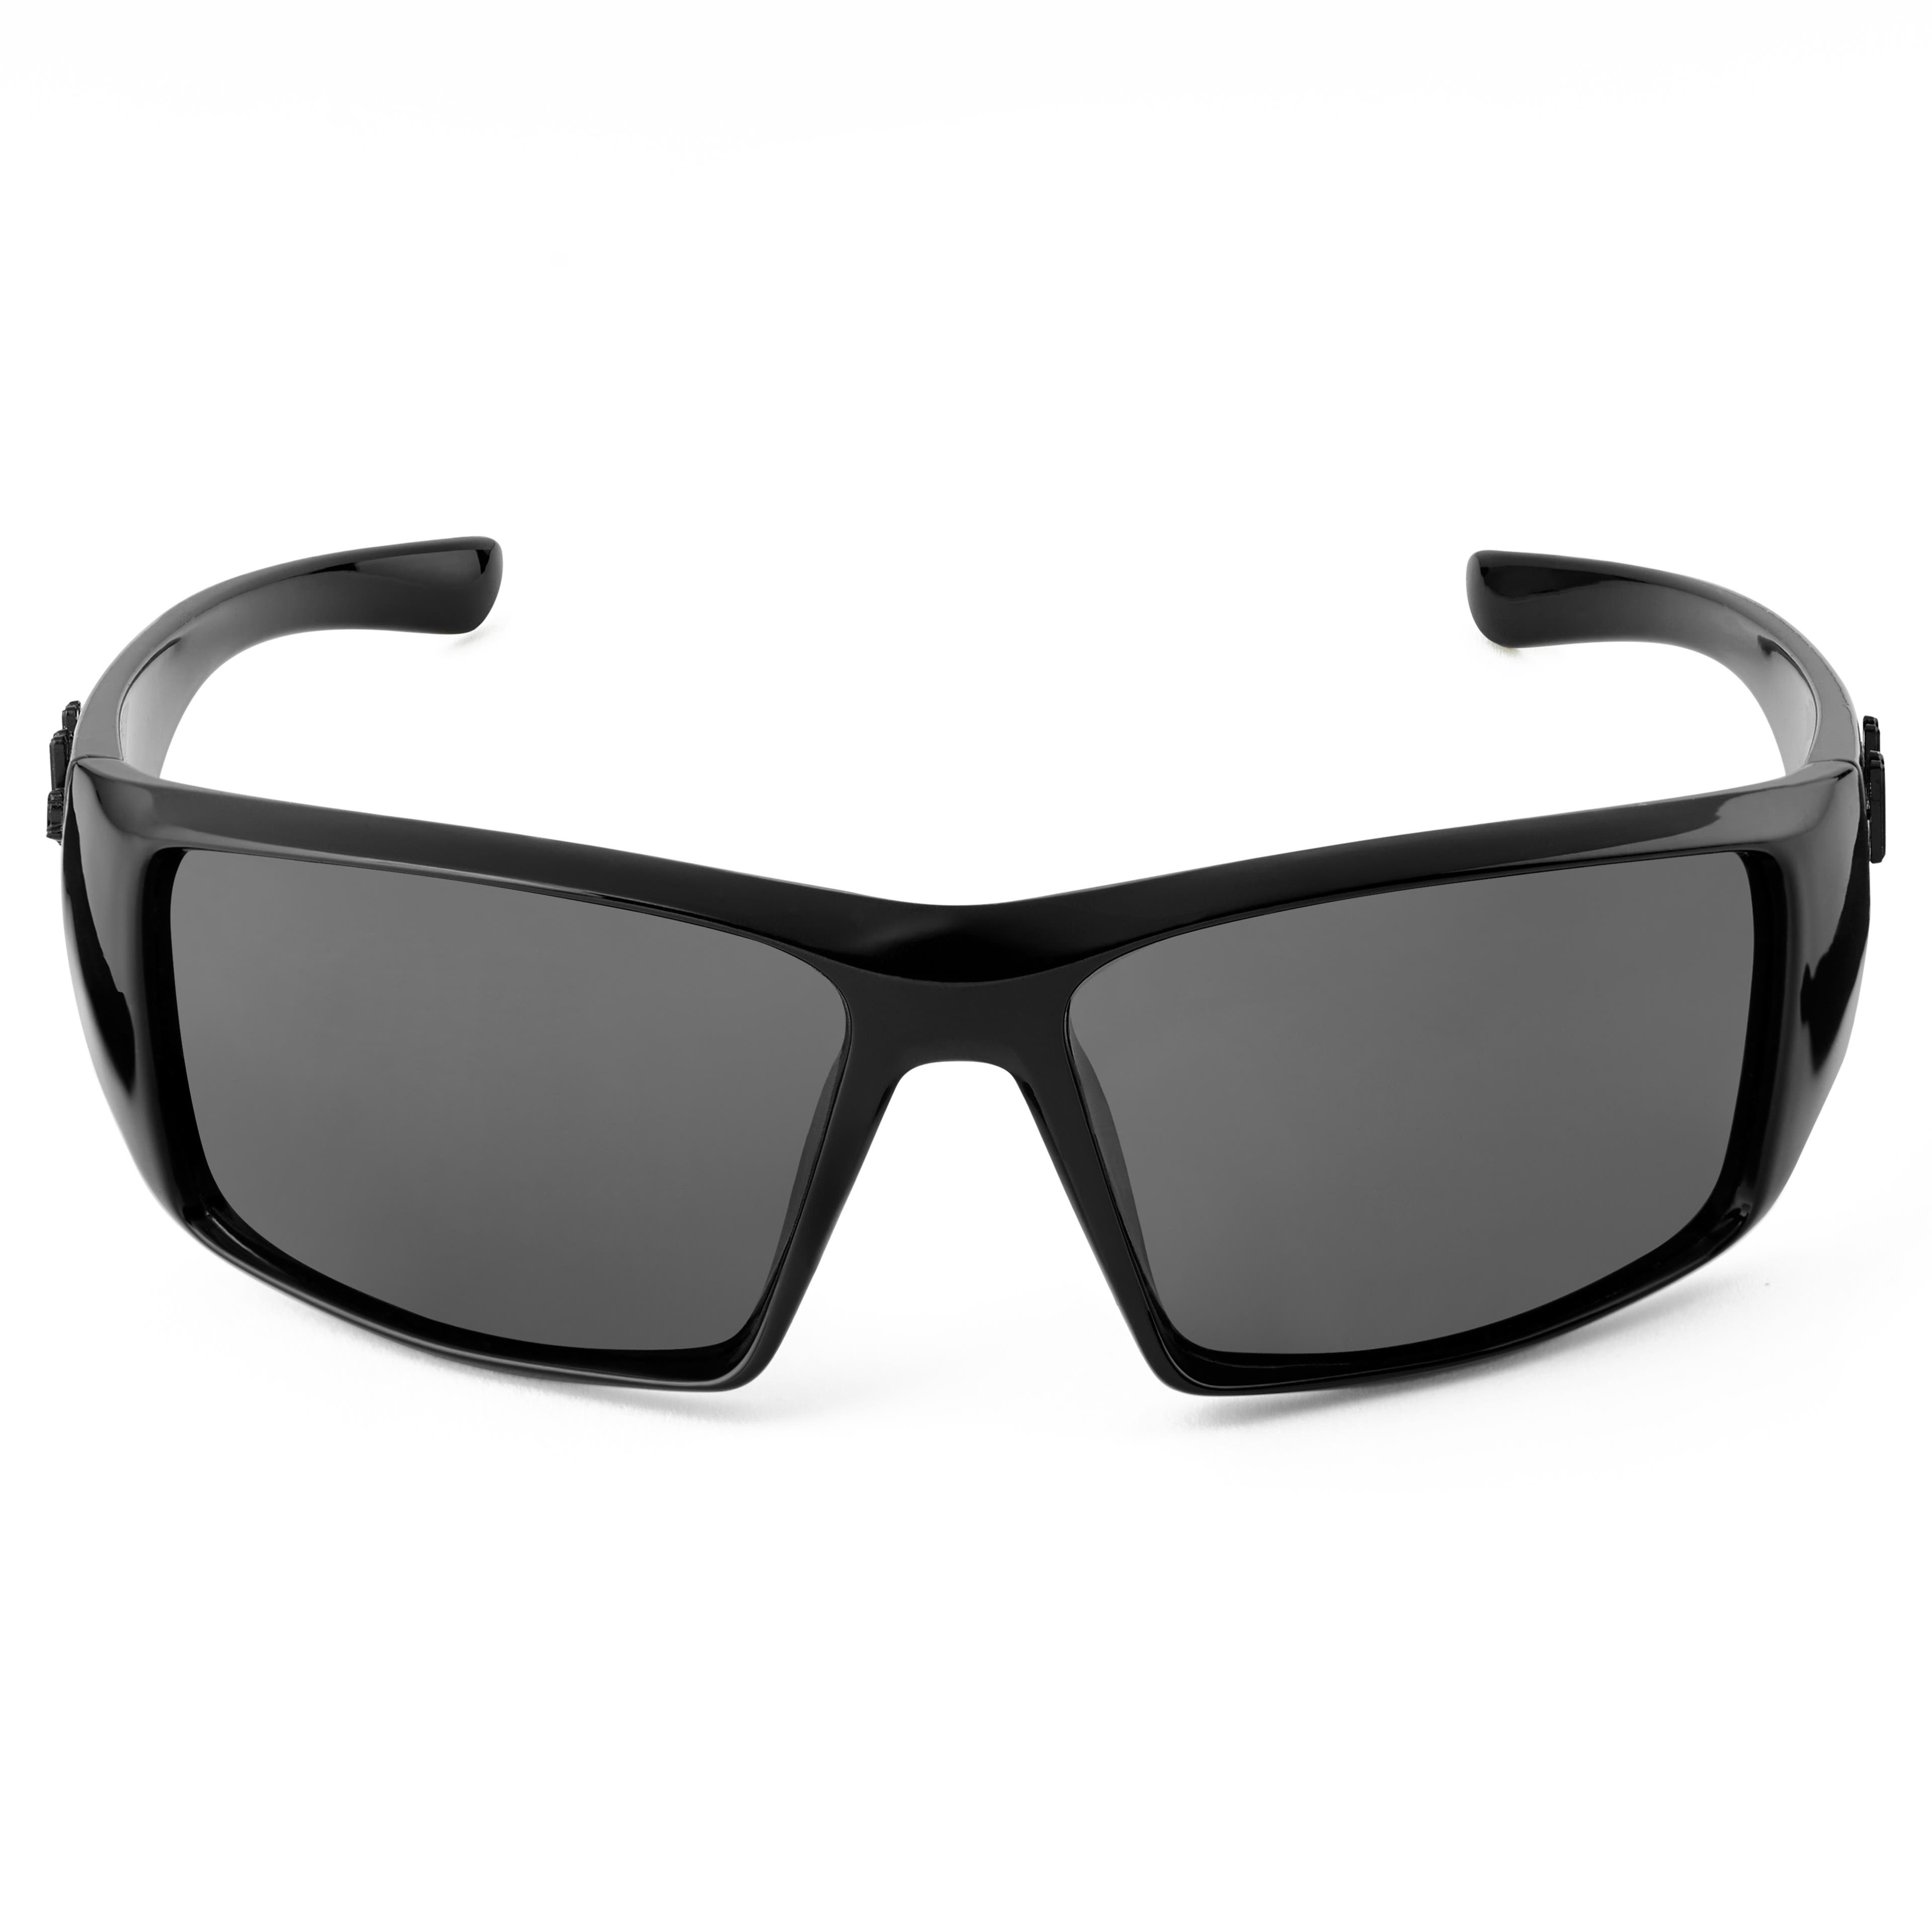 Γυαλιά Ηλίου Mick Verge Black & Grey Polarized - Κατηγορία 3.5